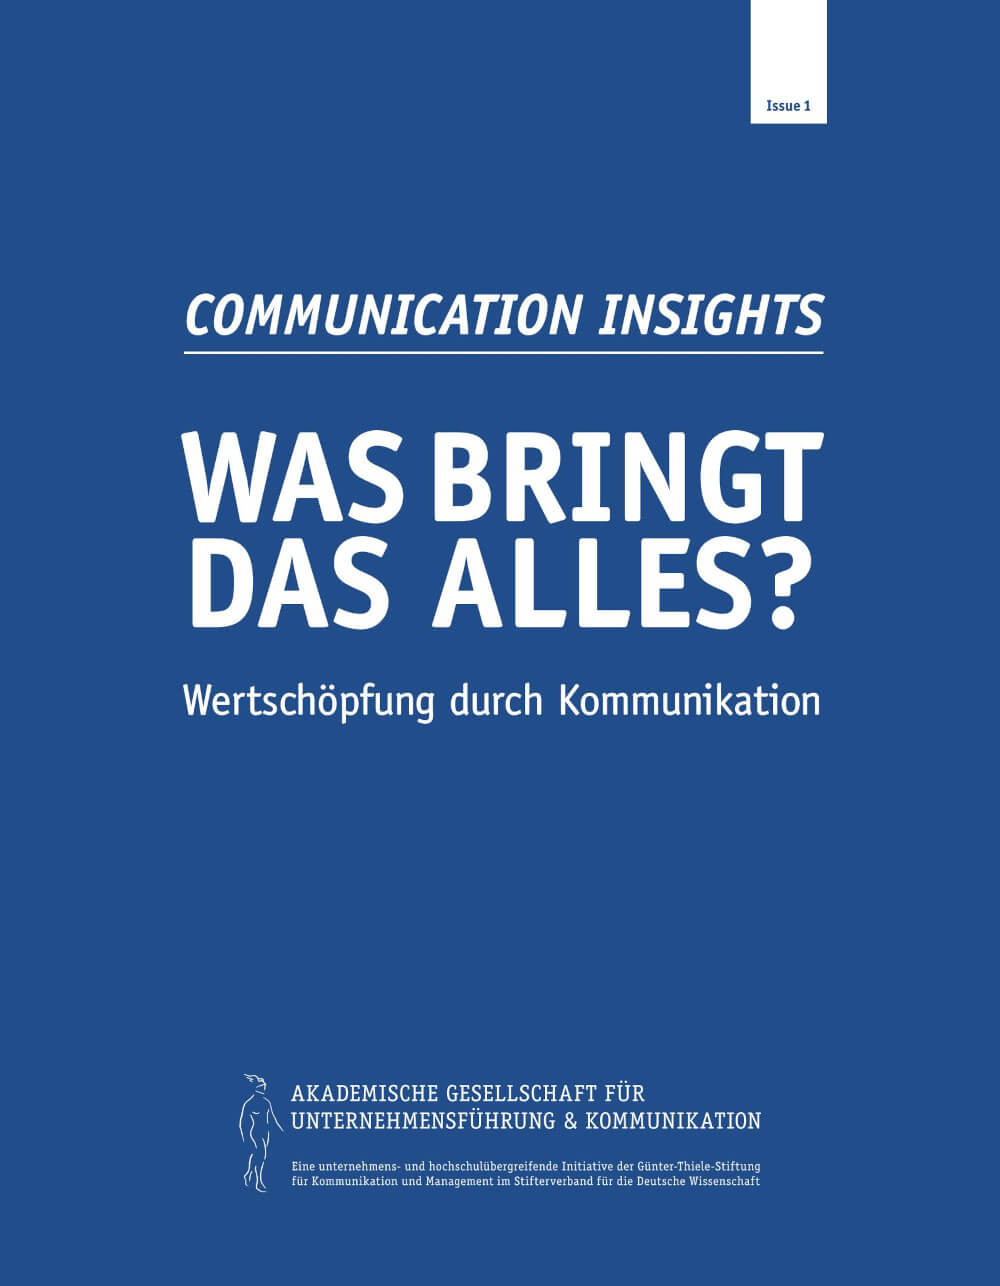 Communication Insights: Was bringt das alles?